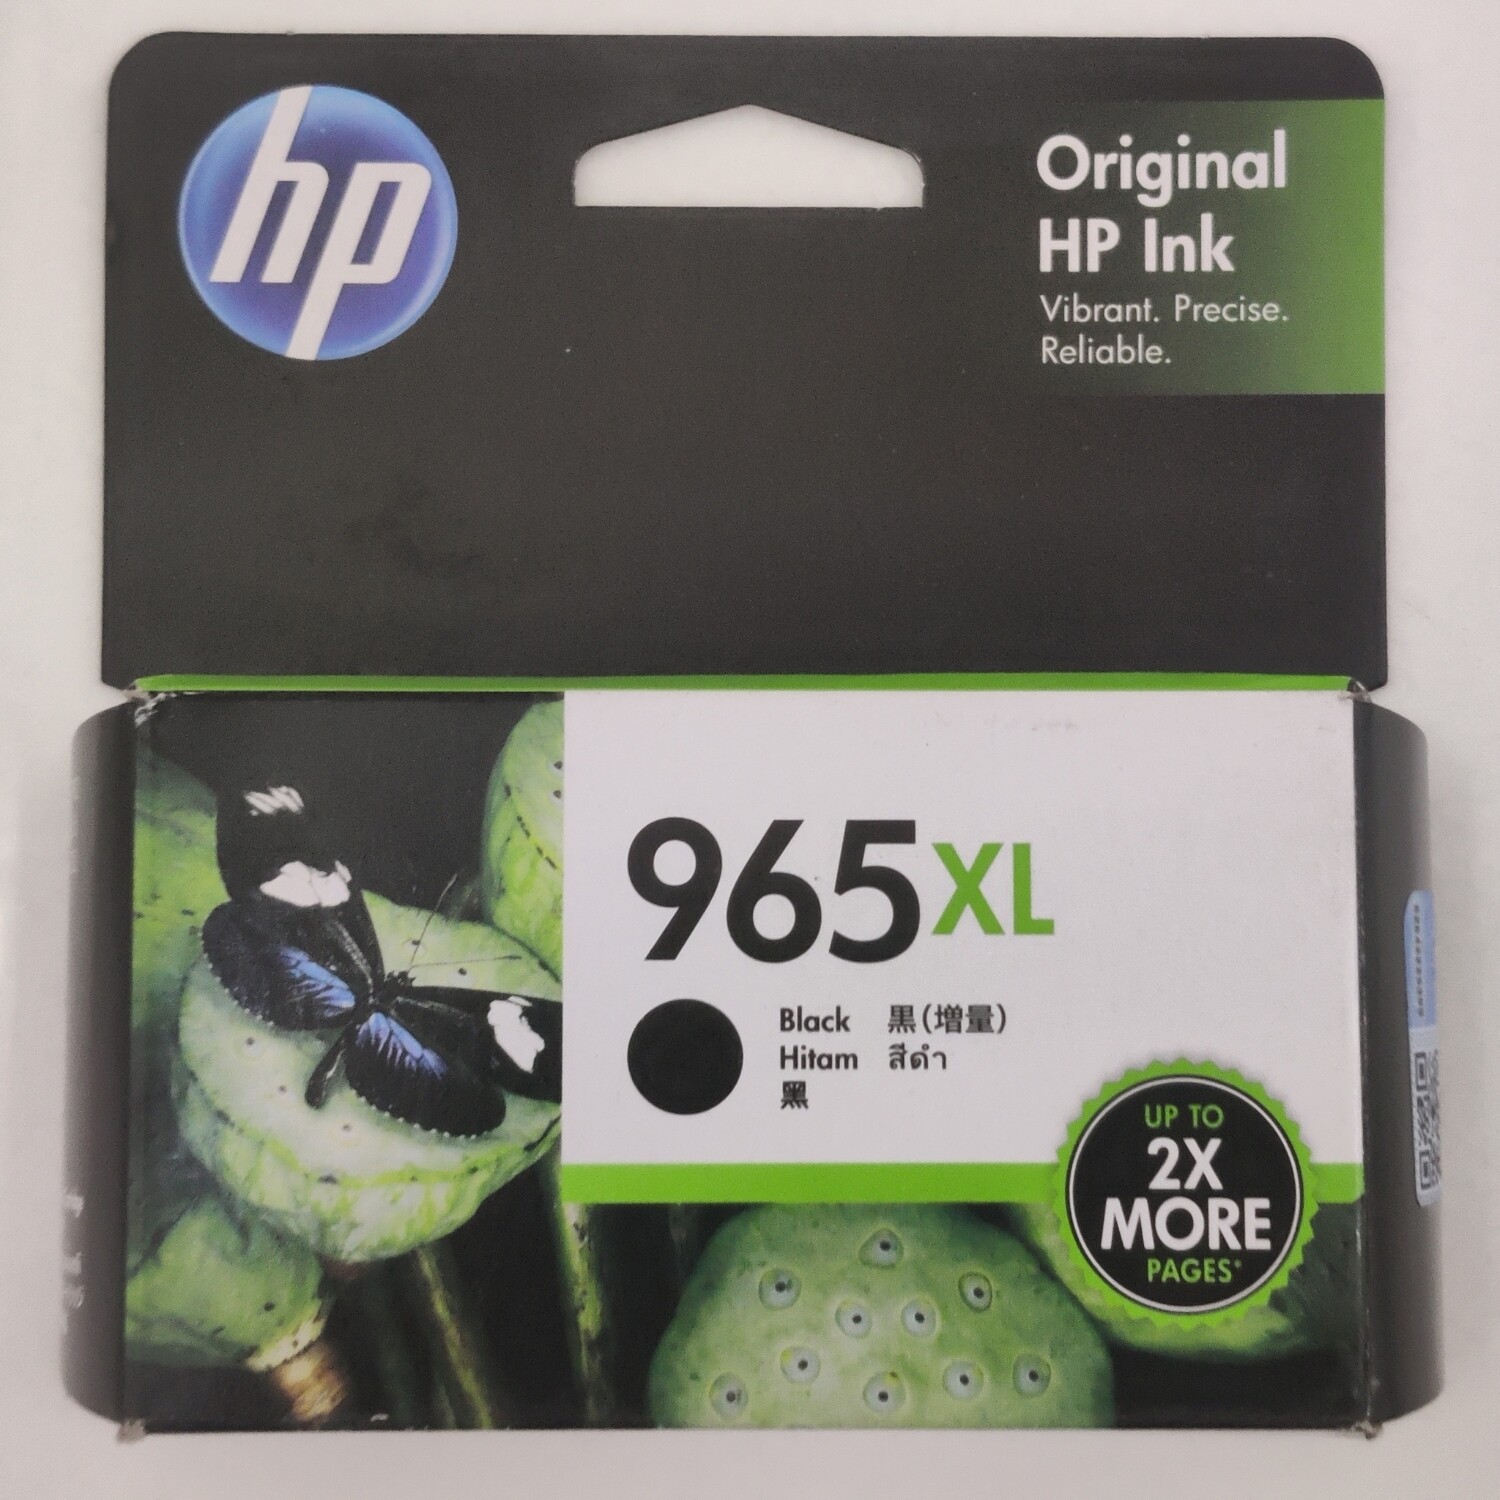 HP Officejet 965XL Black Ink Cartridge